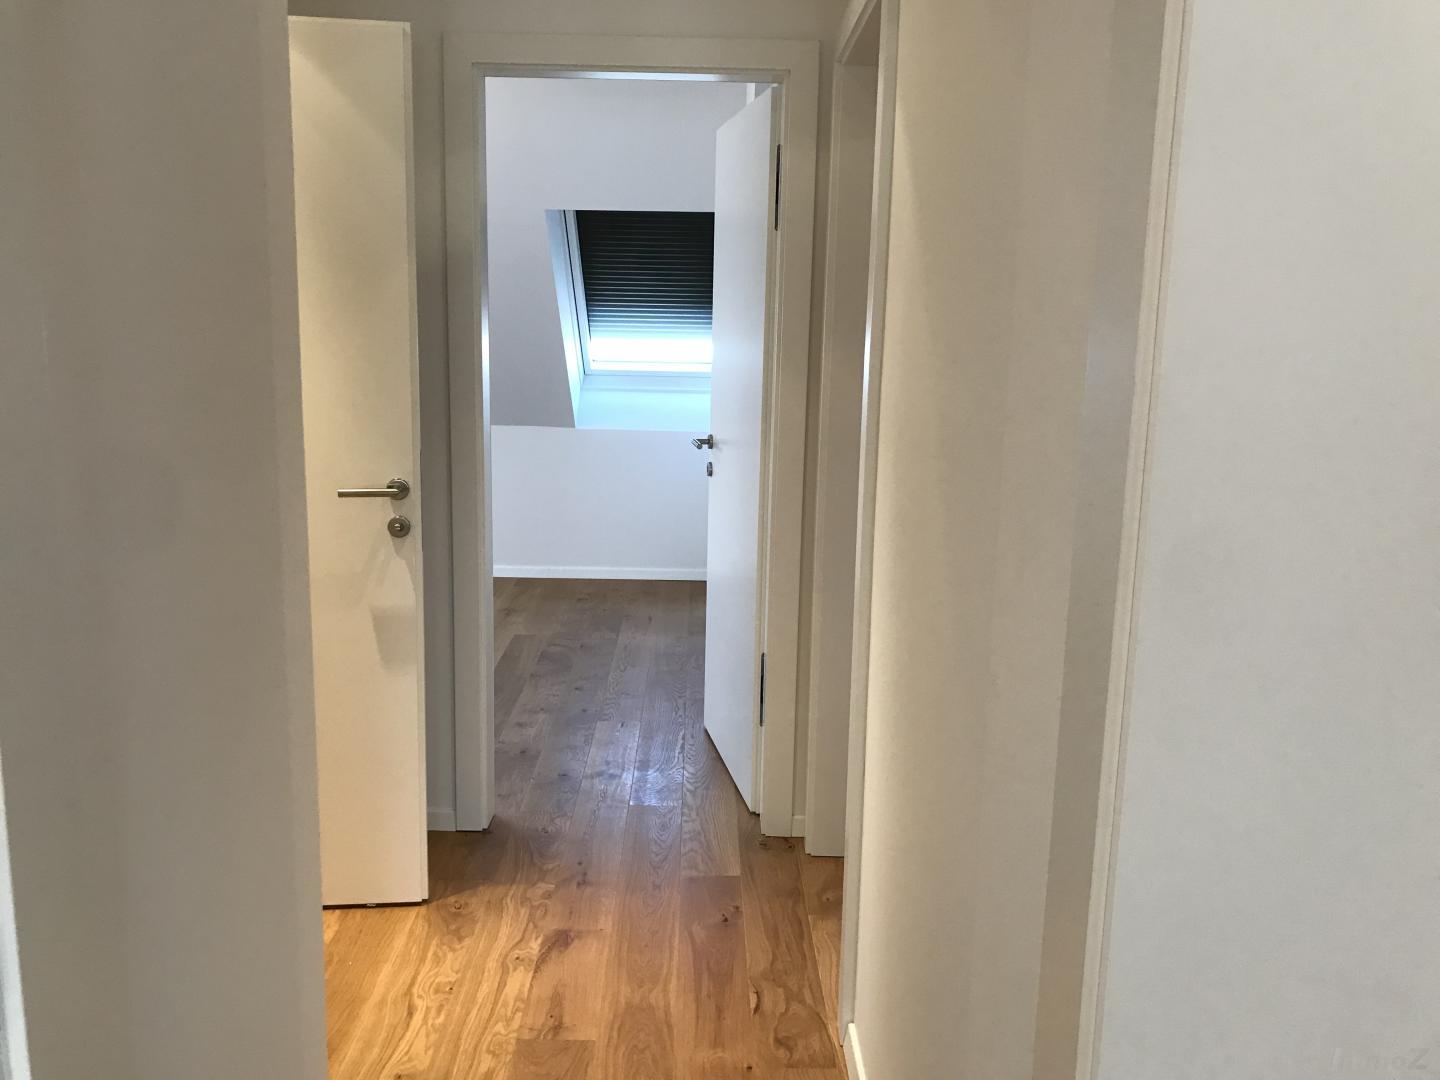 Wohnung zum Kaufen: 1100 Wien,Favoriten - IMG_3516